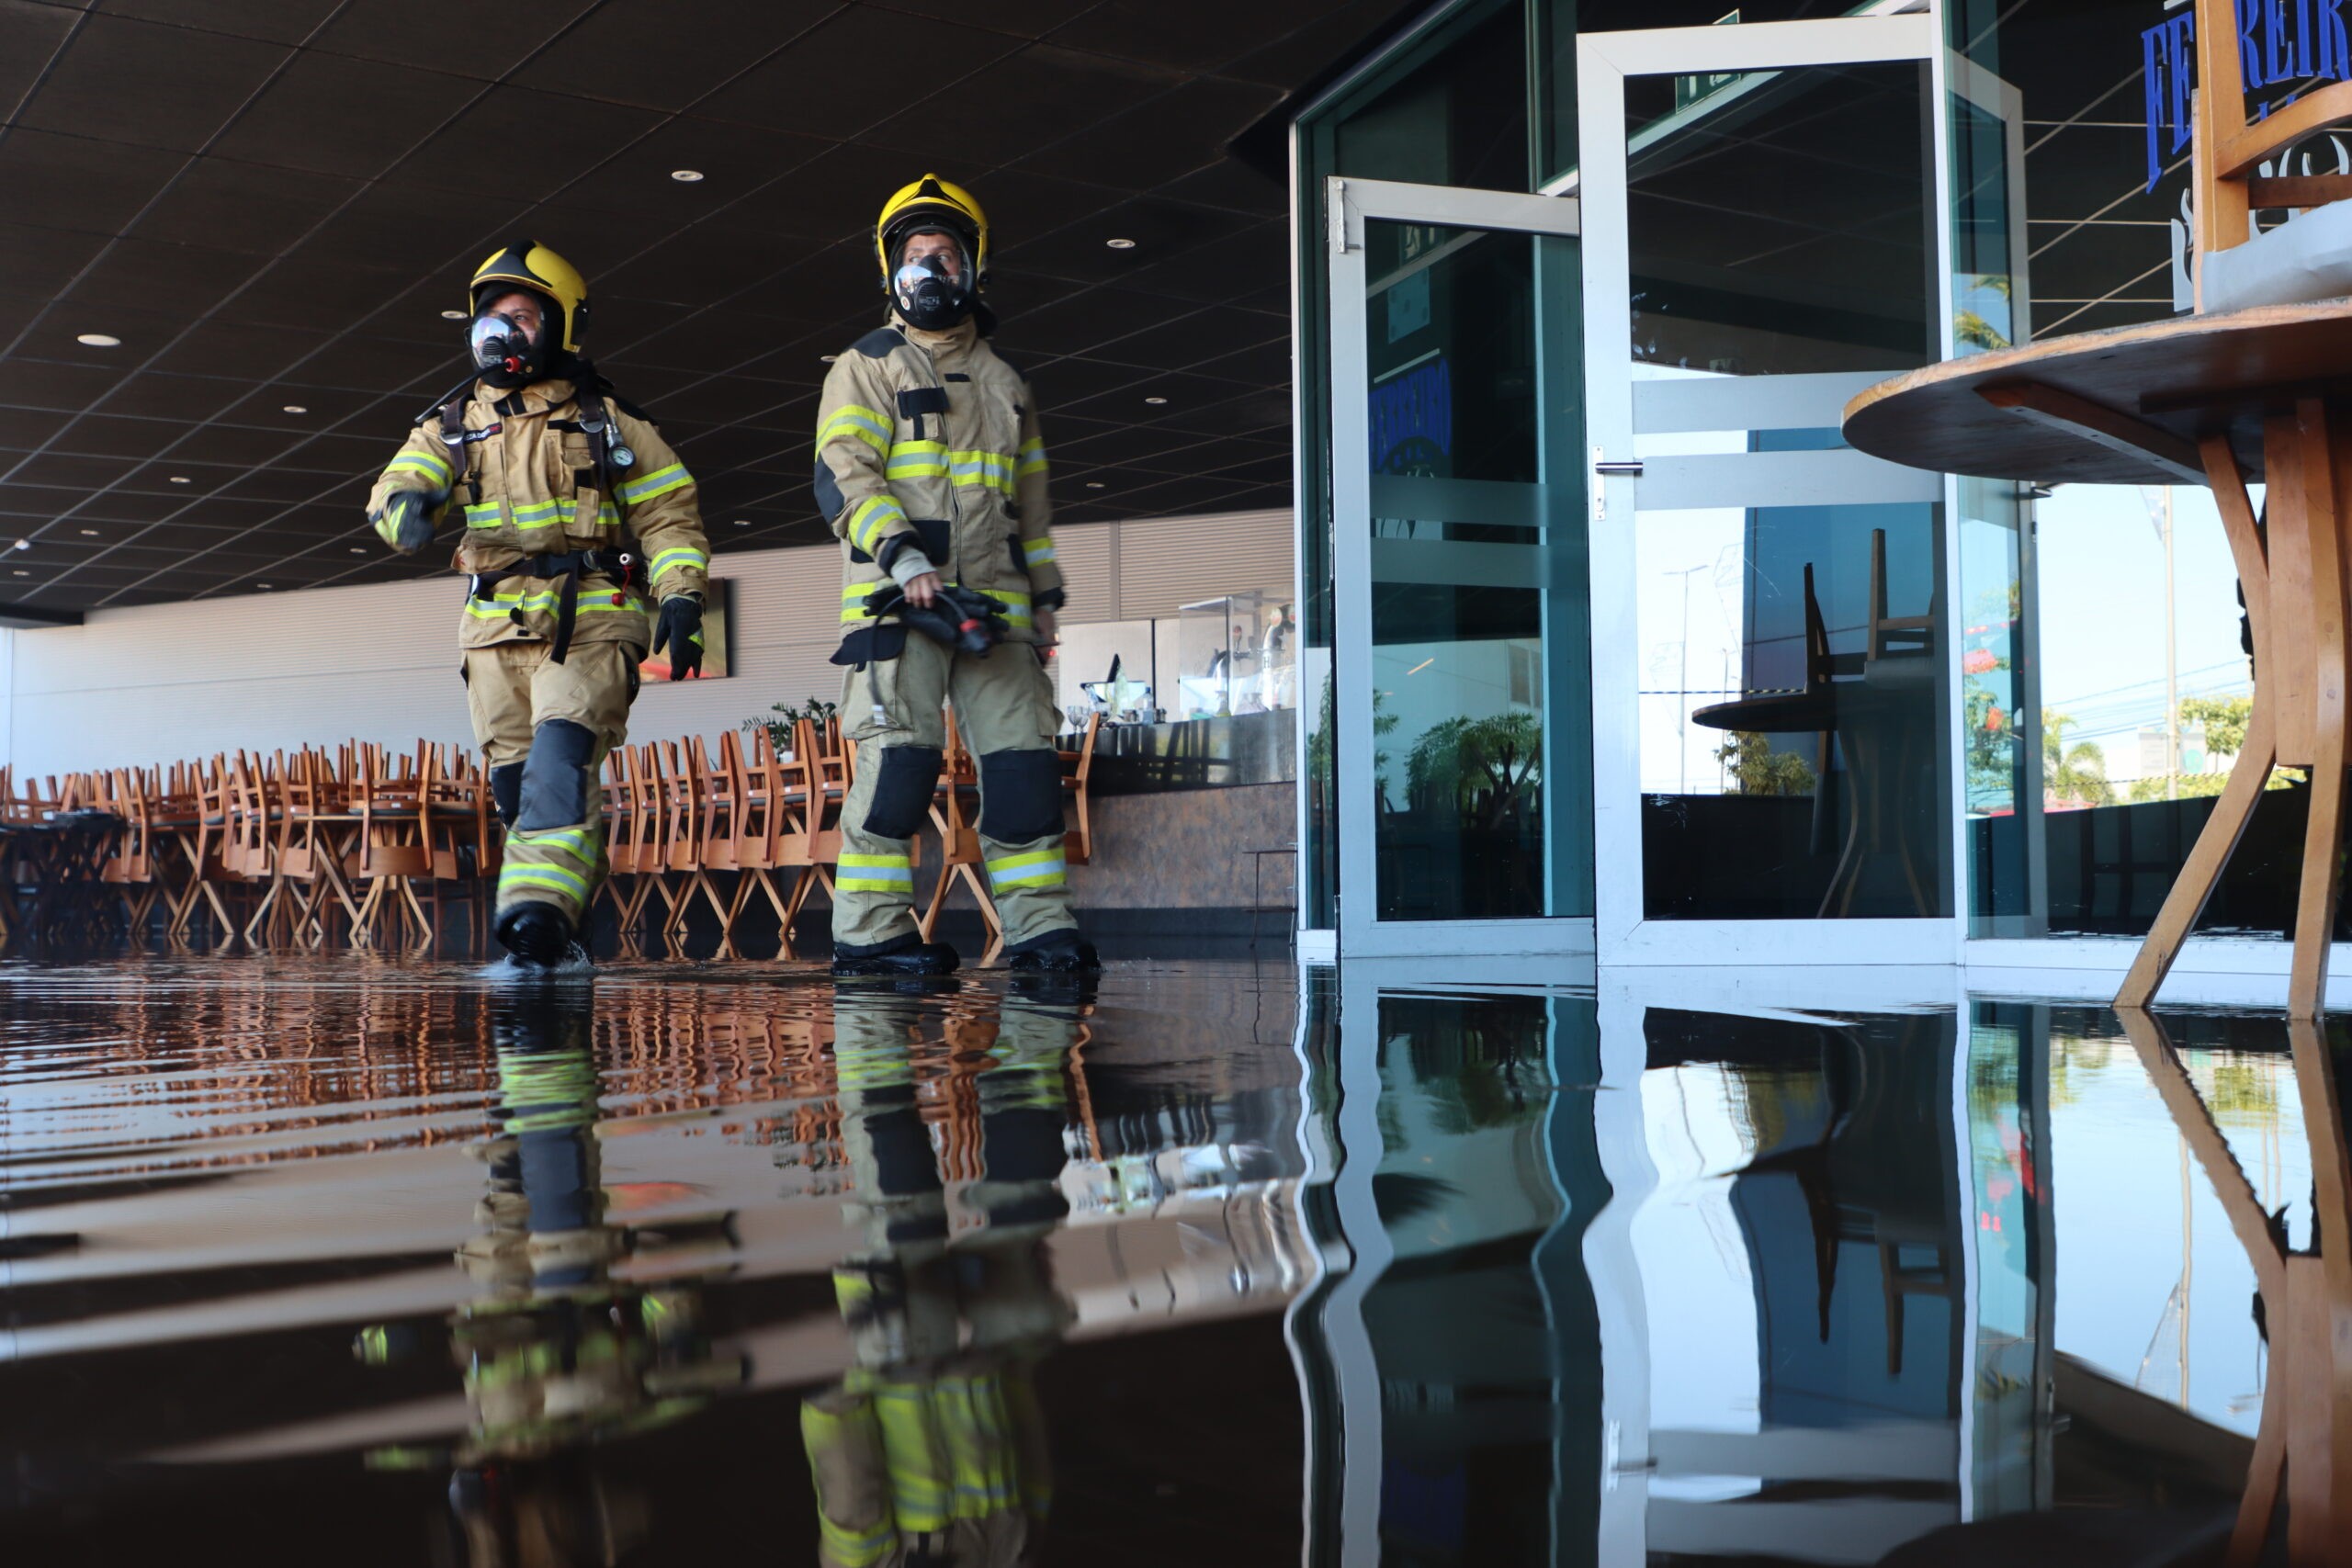 Principio de incêndio em restaurante de shopping de Aracaju assusta funcionários e clientes